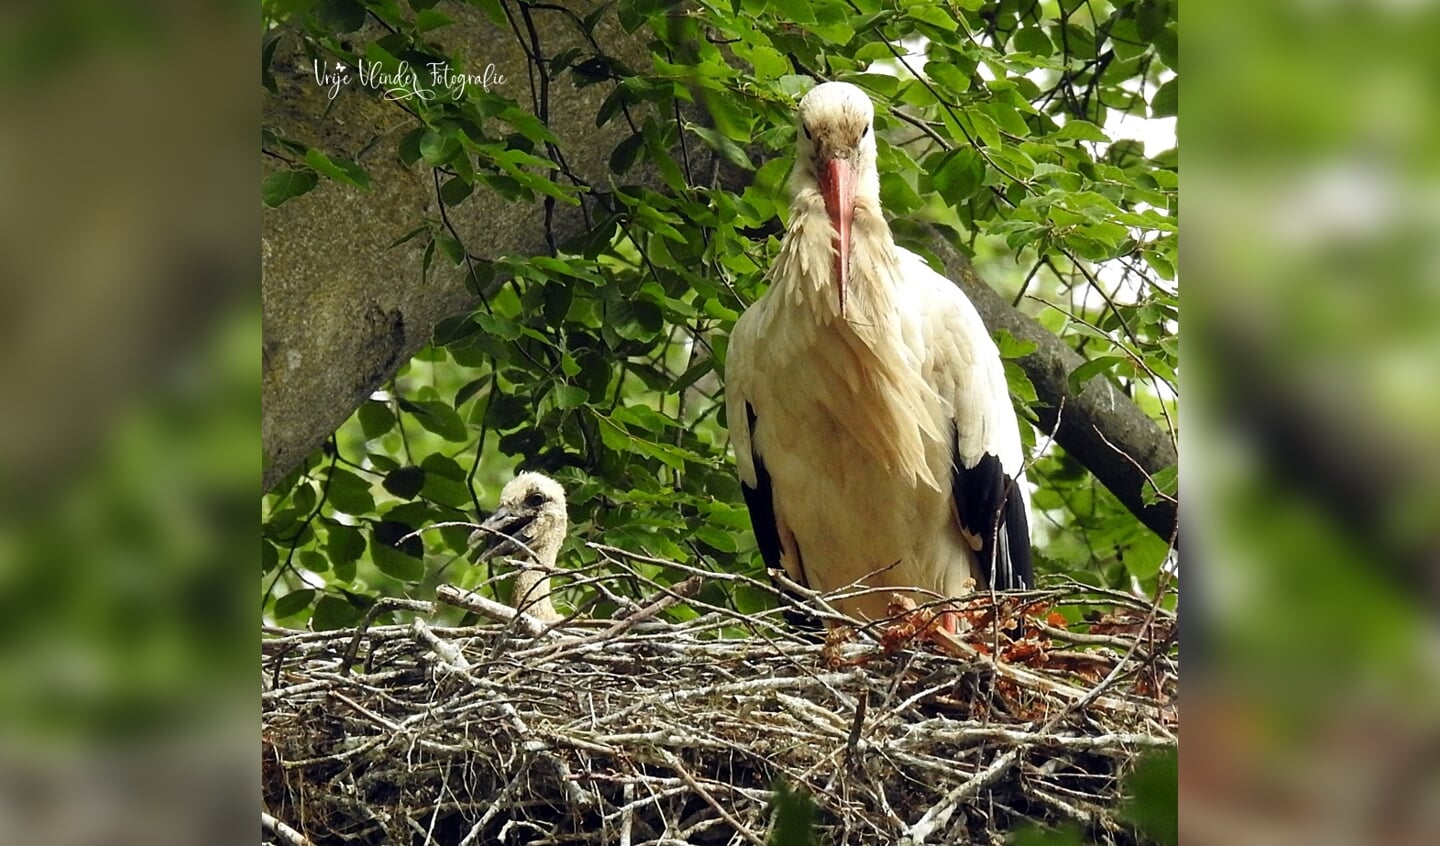 Dode-boom nest ouder ooievaar met jong